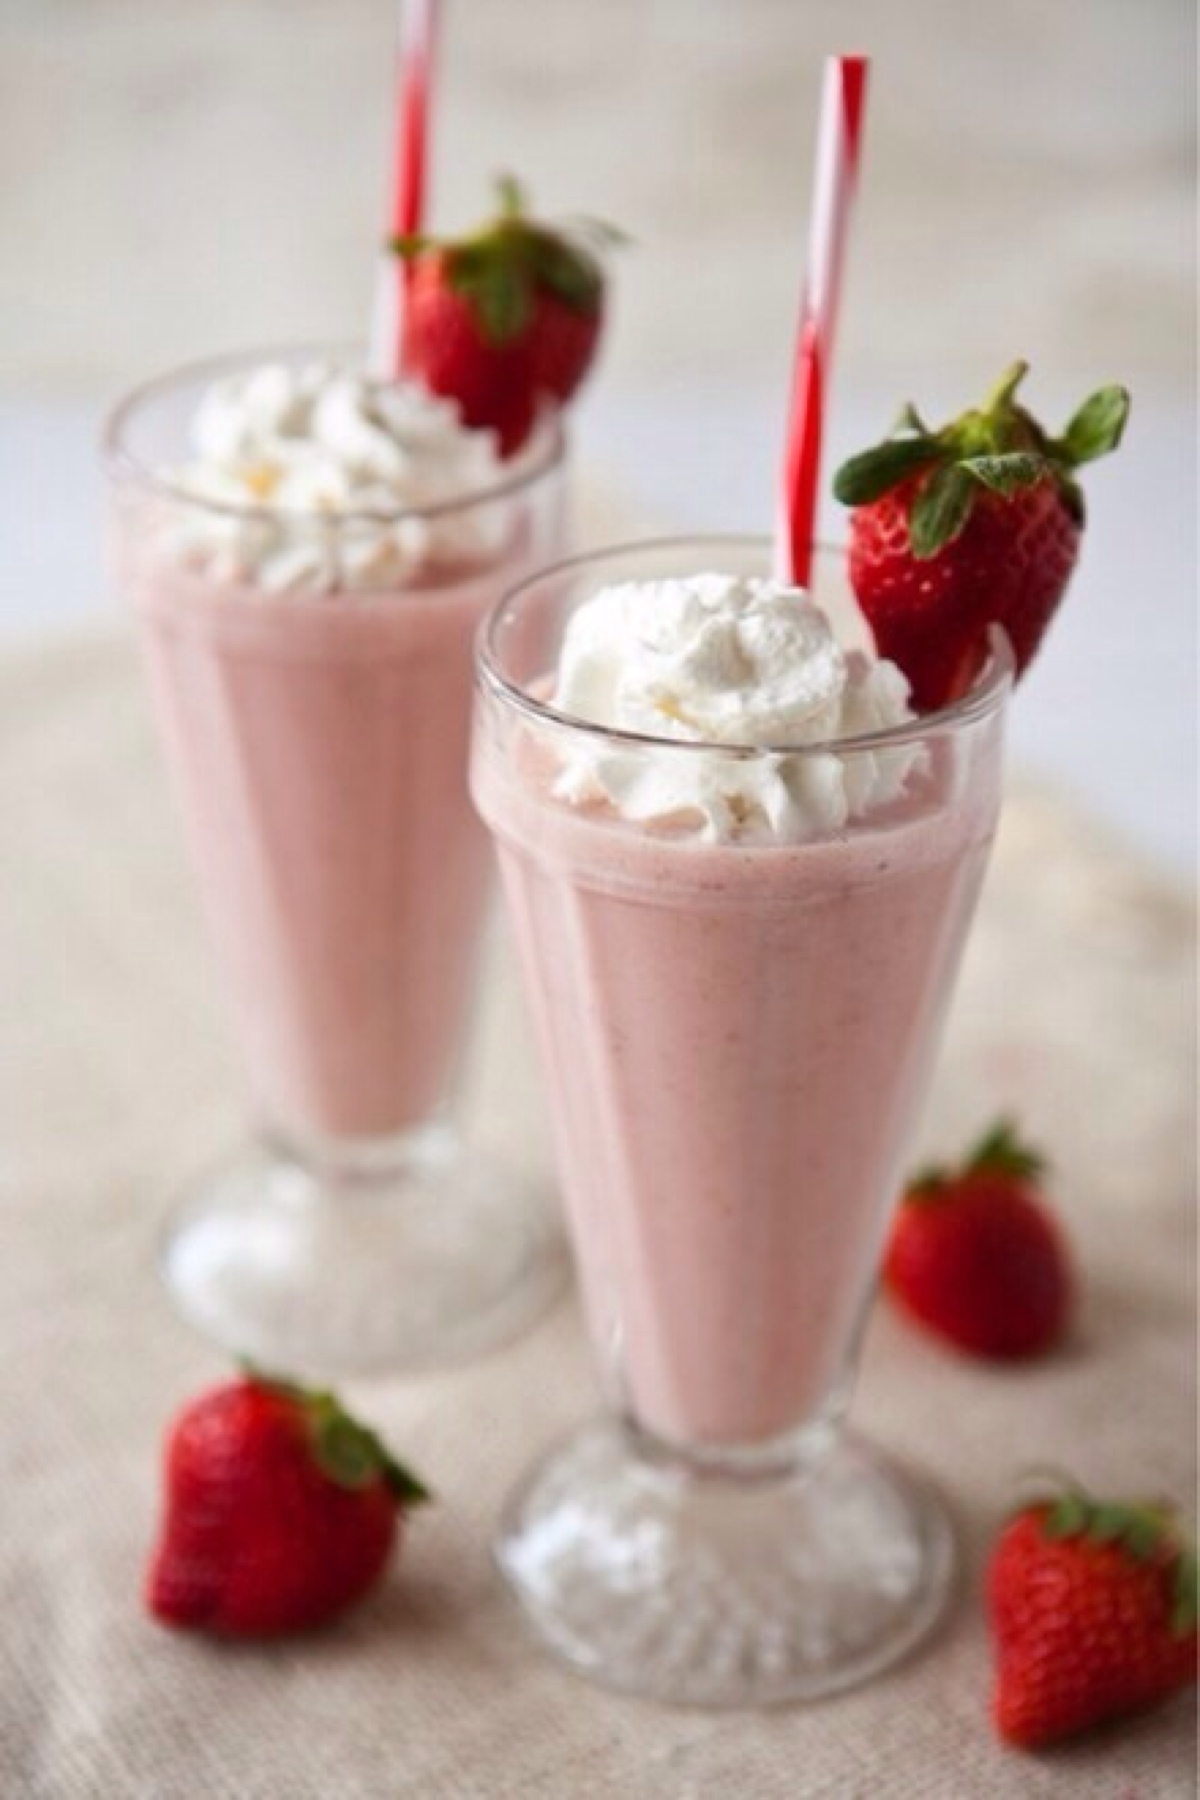 来一杯草莓奶昔放松下!